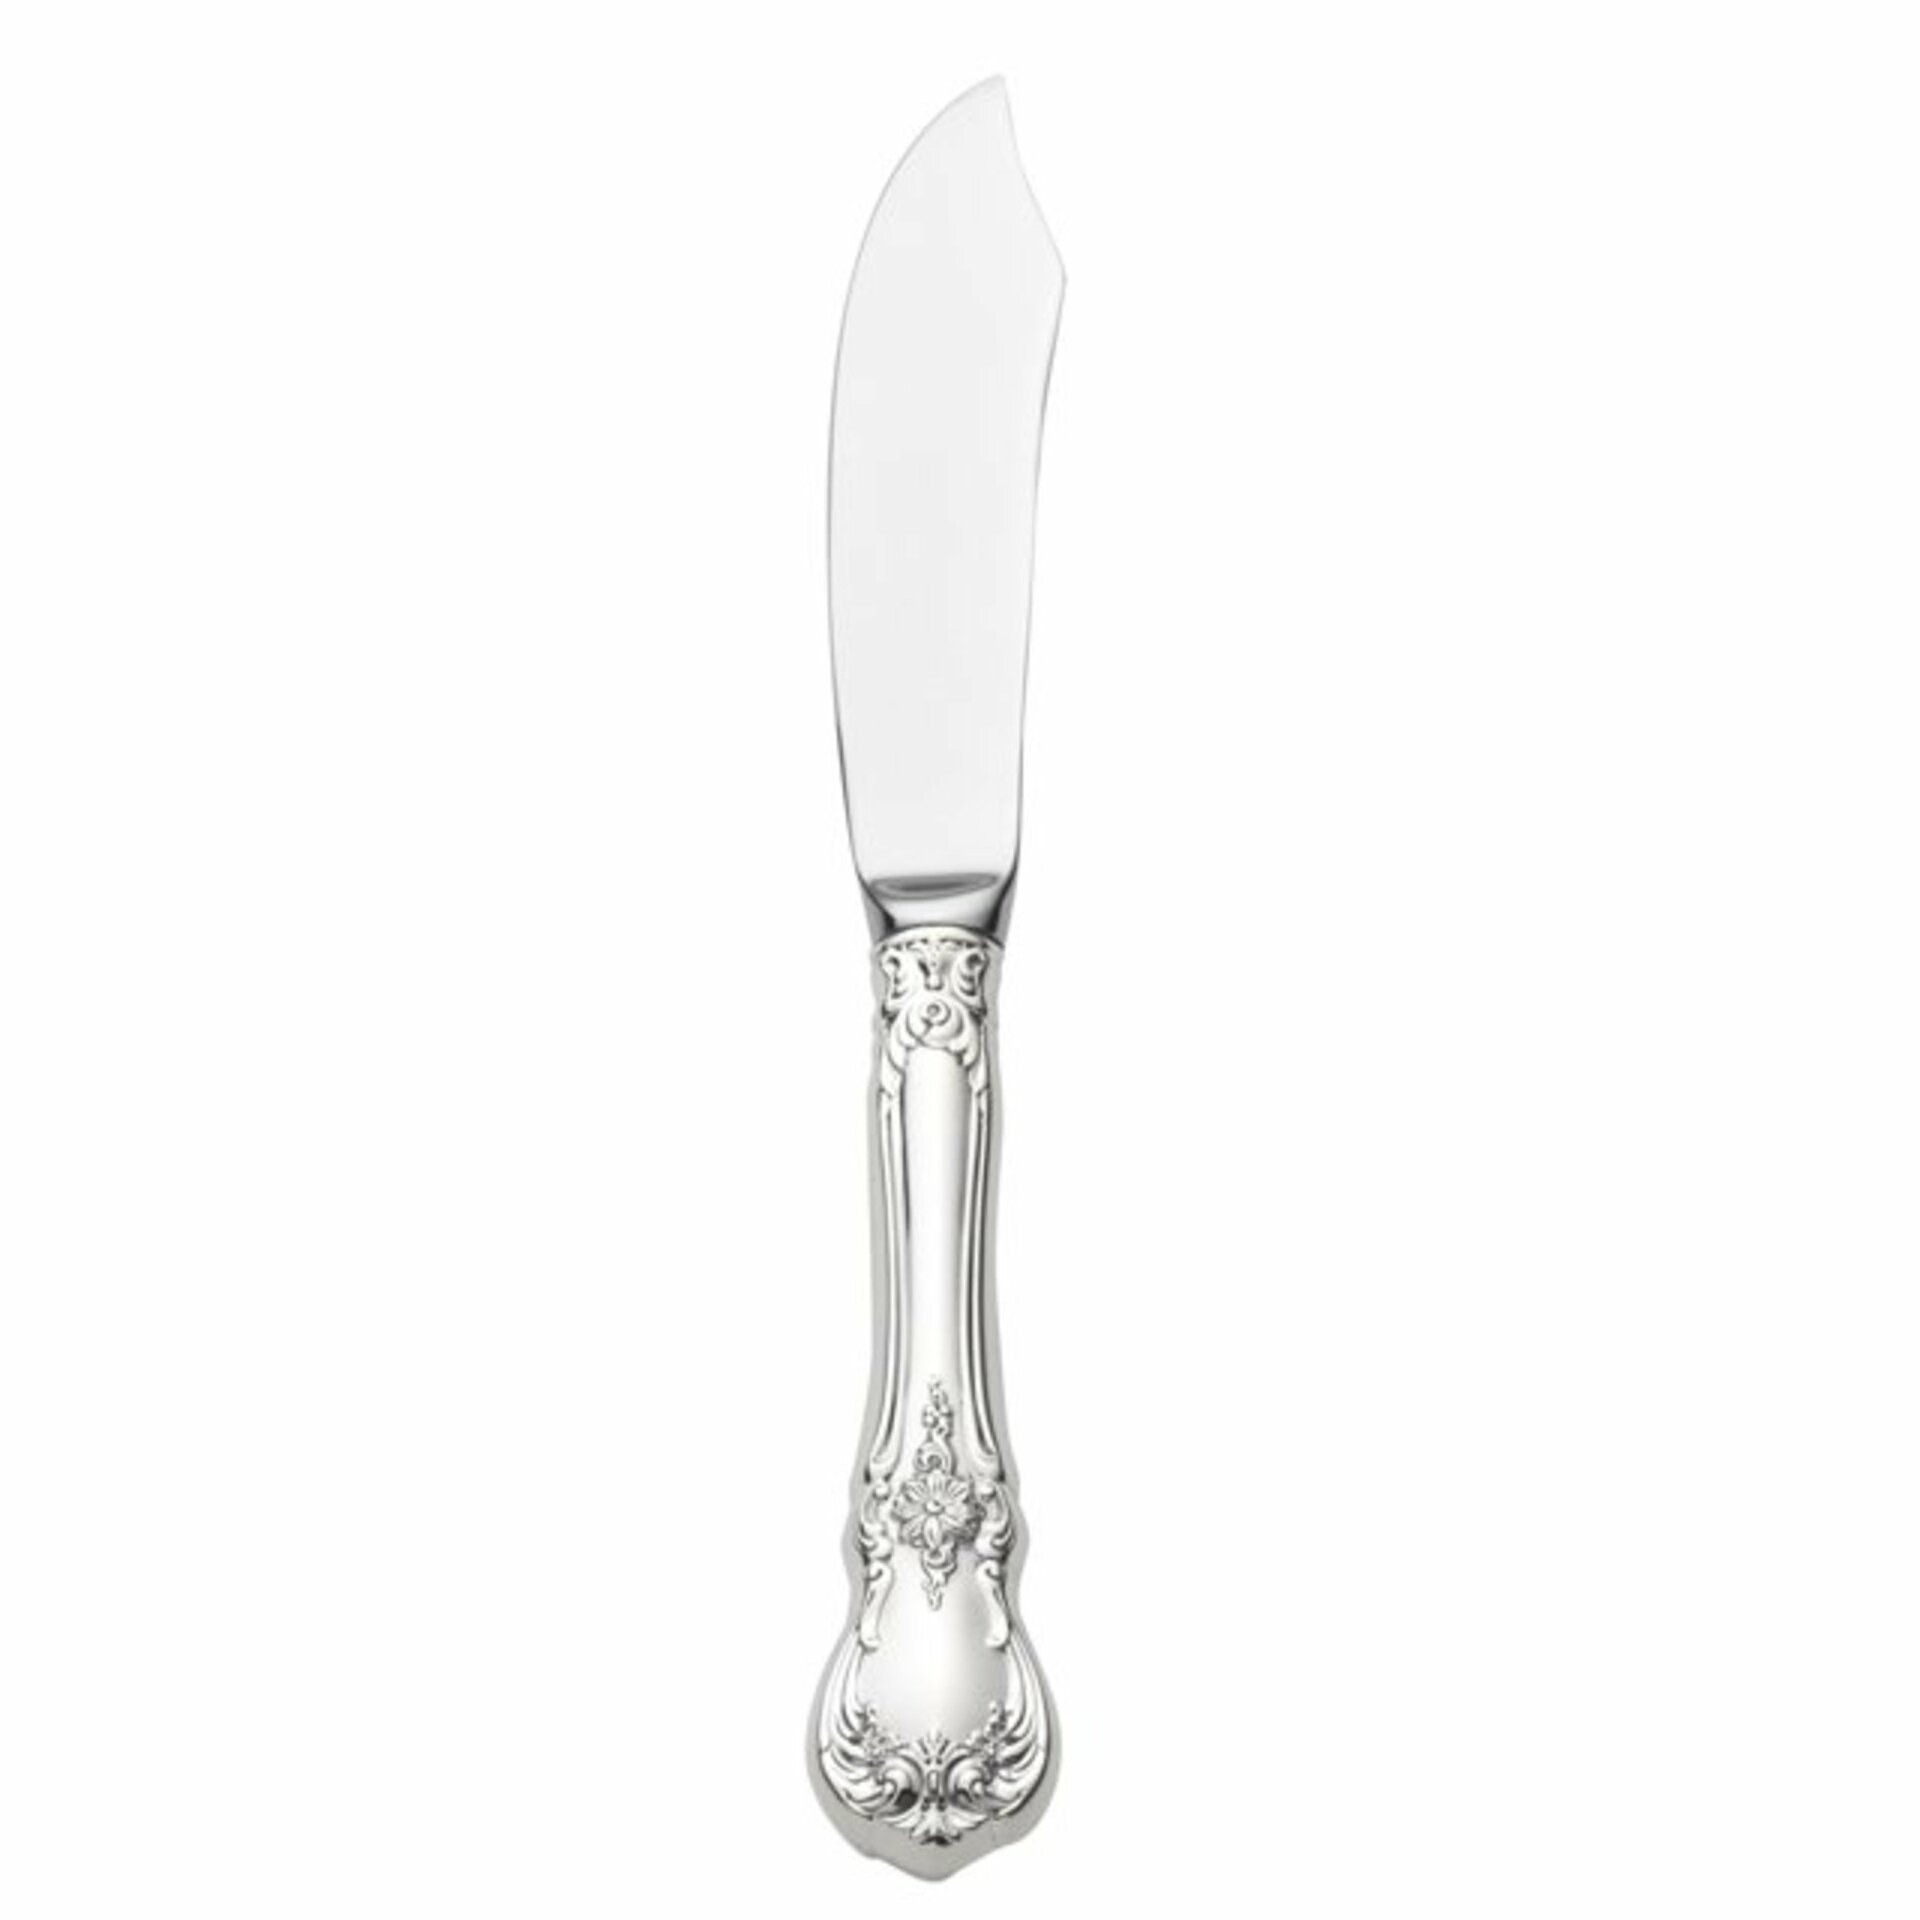 https://assets.wfcdn.com/im/17473482/compr-r85/6789/67897115/sterling-silver-old-master-dinner-knife.jpg